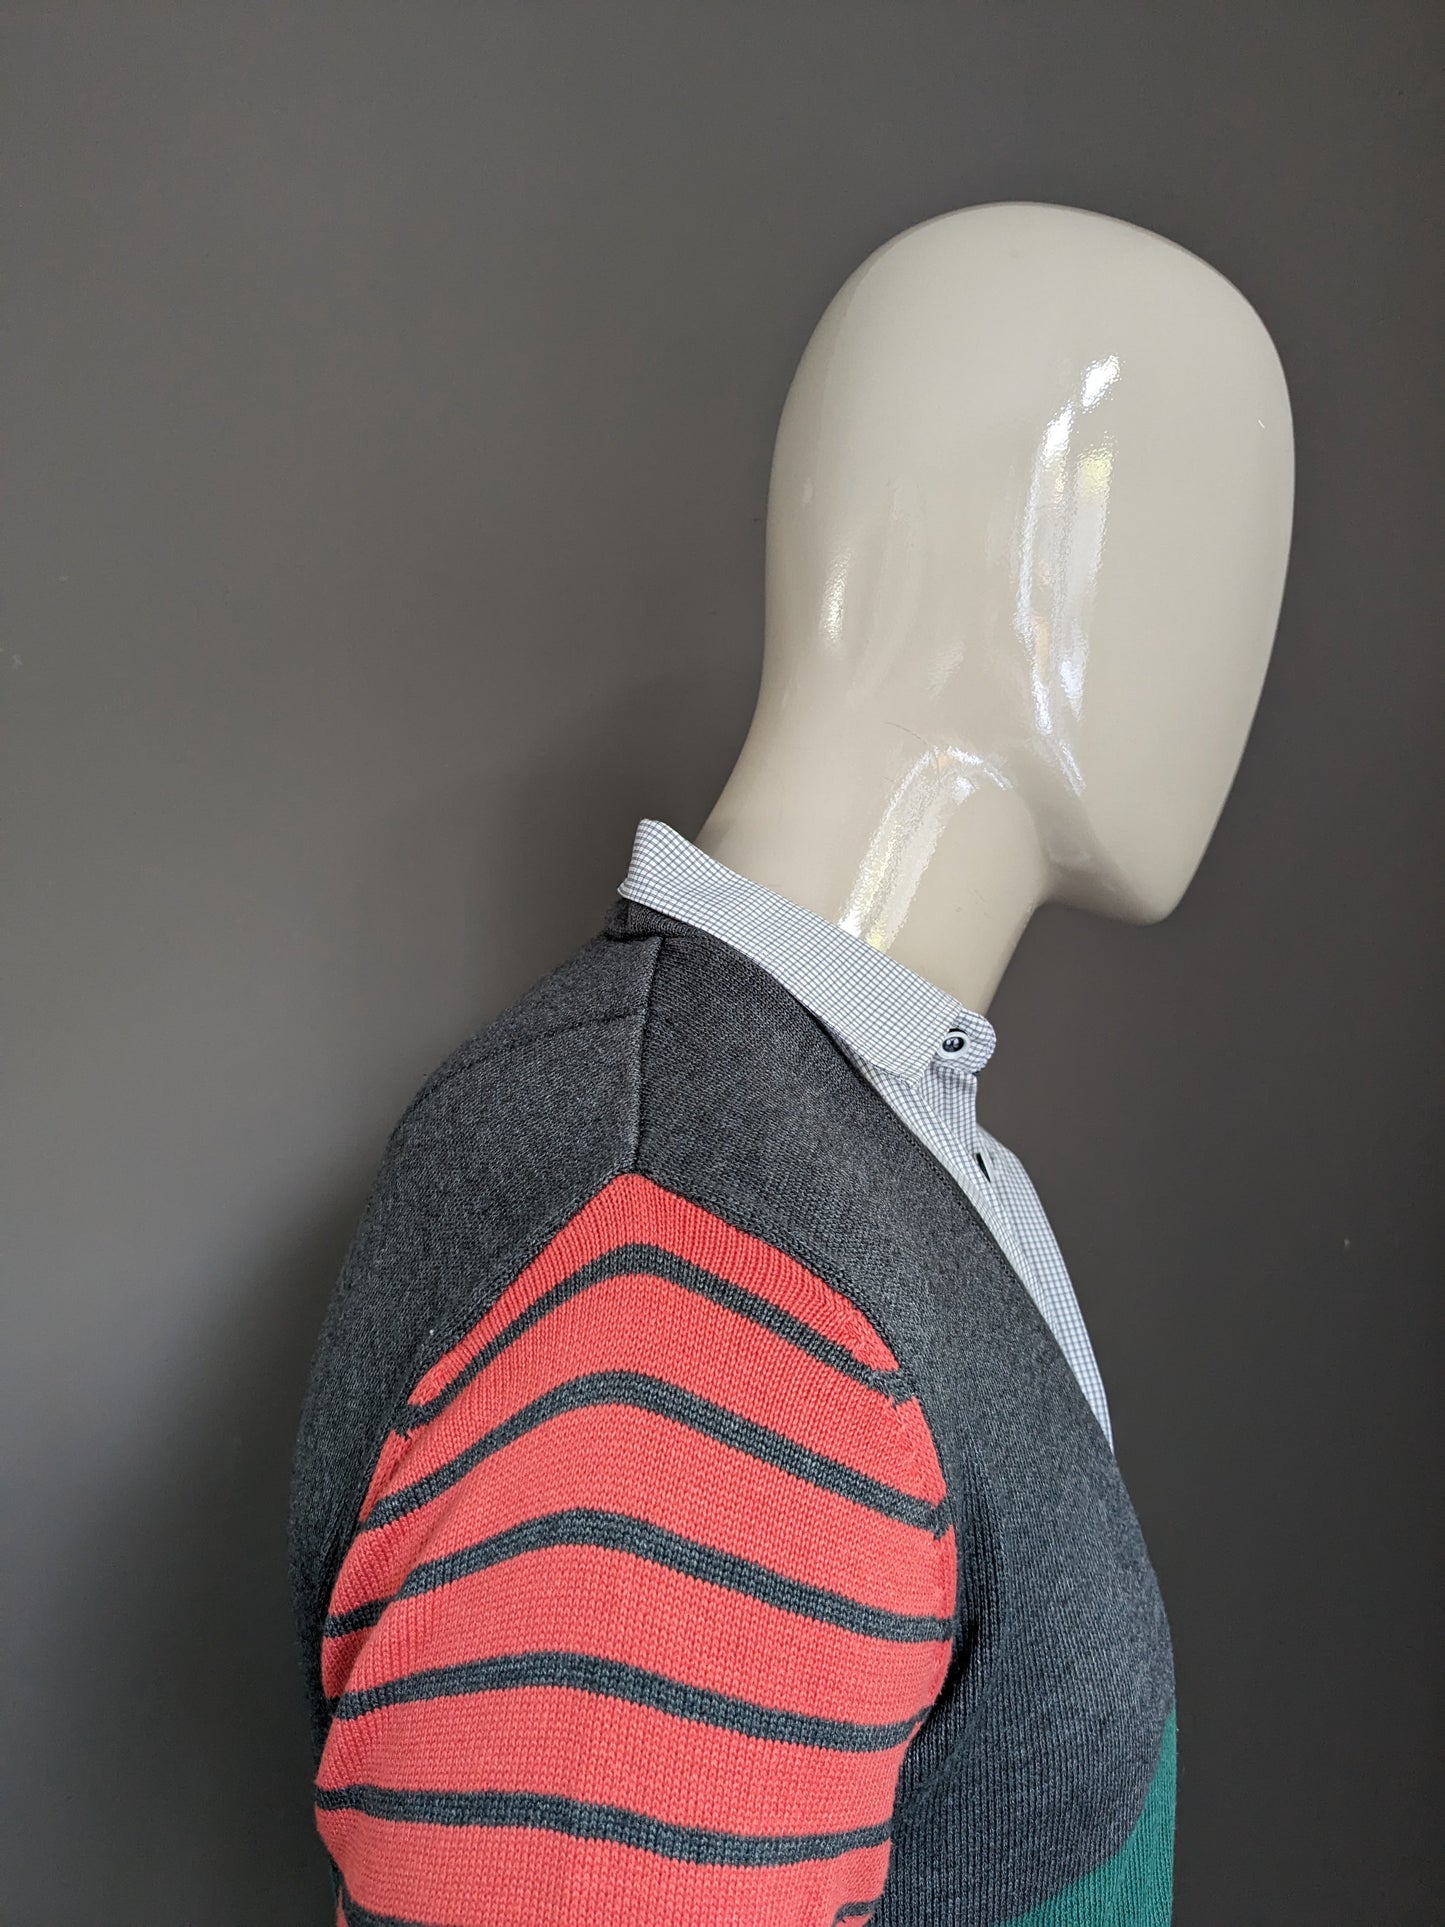 Cipo and Baxx Vest Overhemd combi. Grijs Roze Groen gekleurd. Maat M.